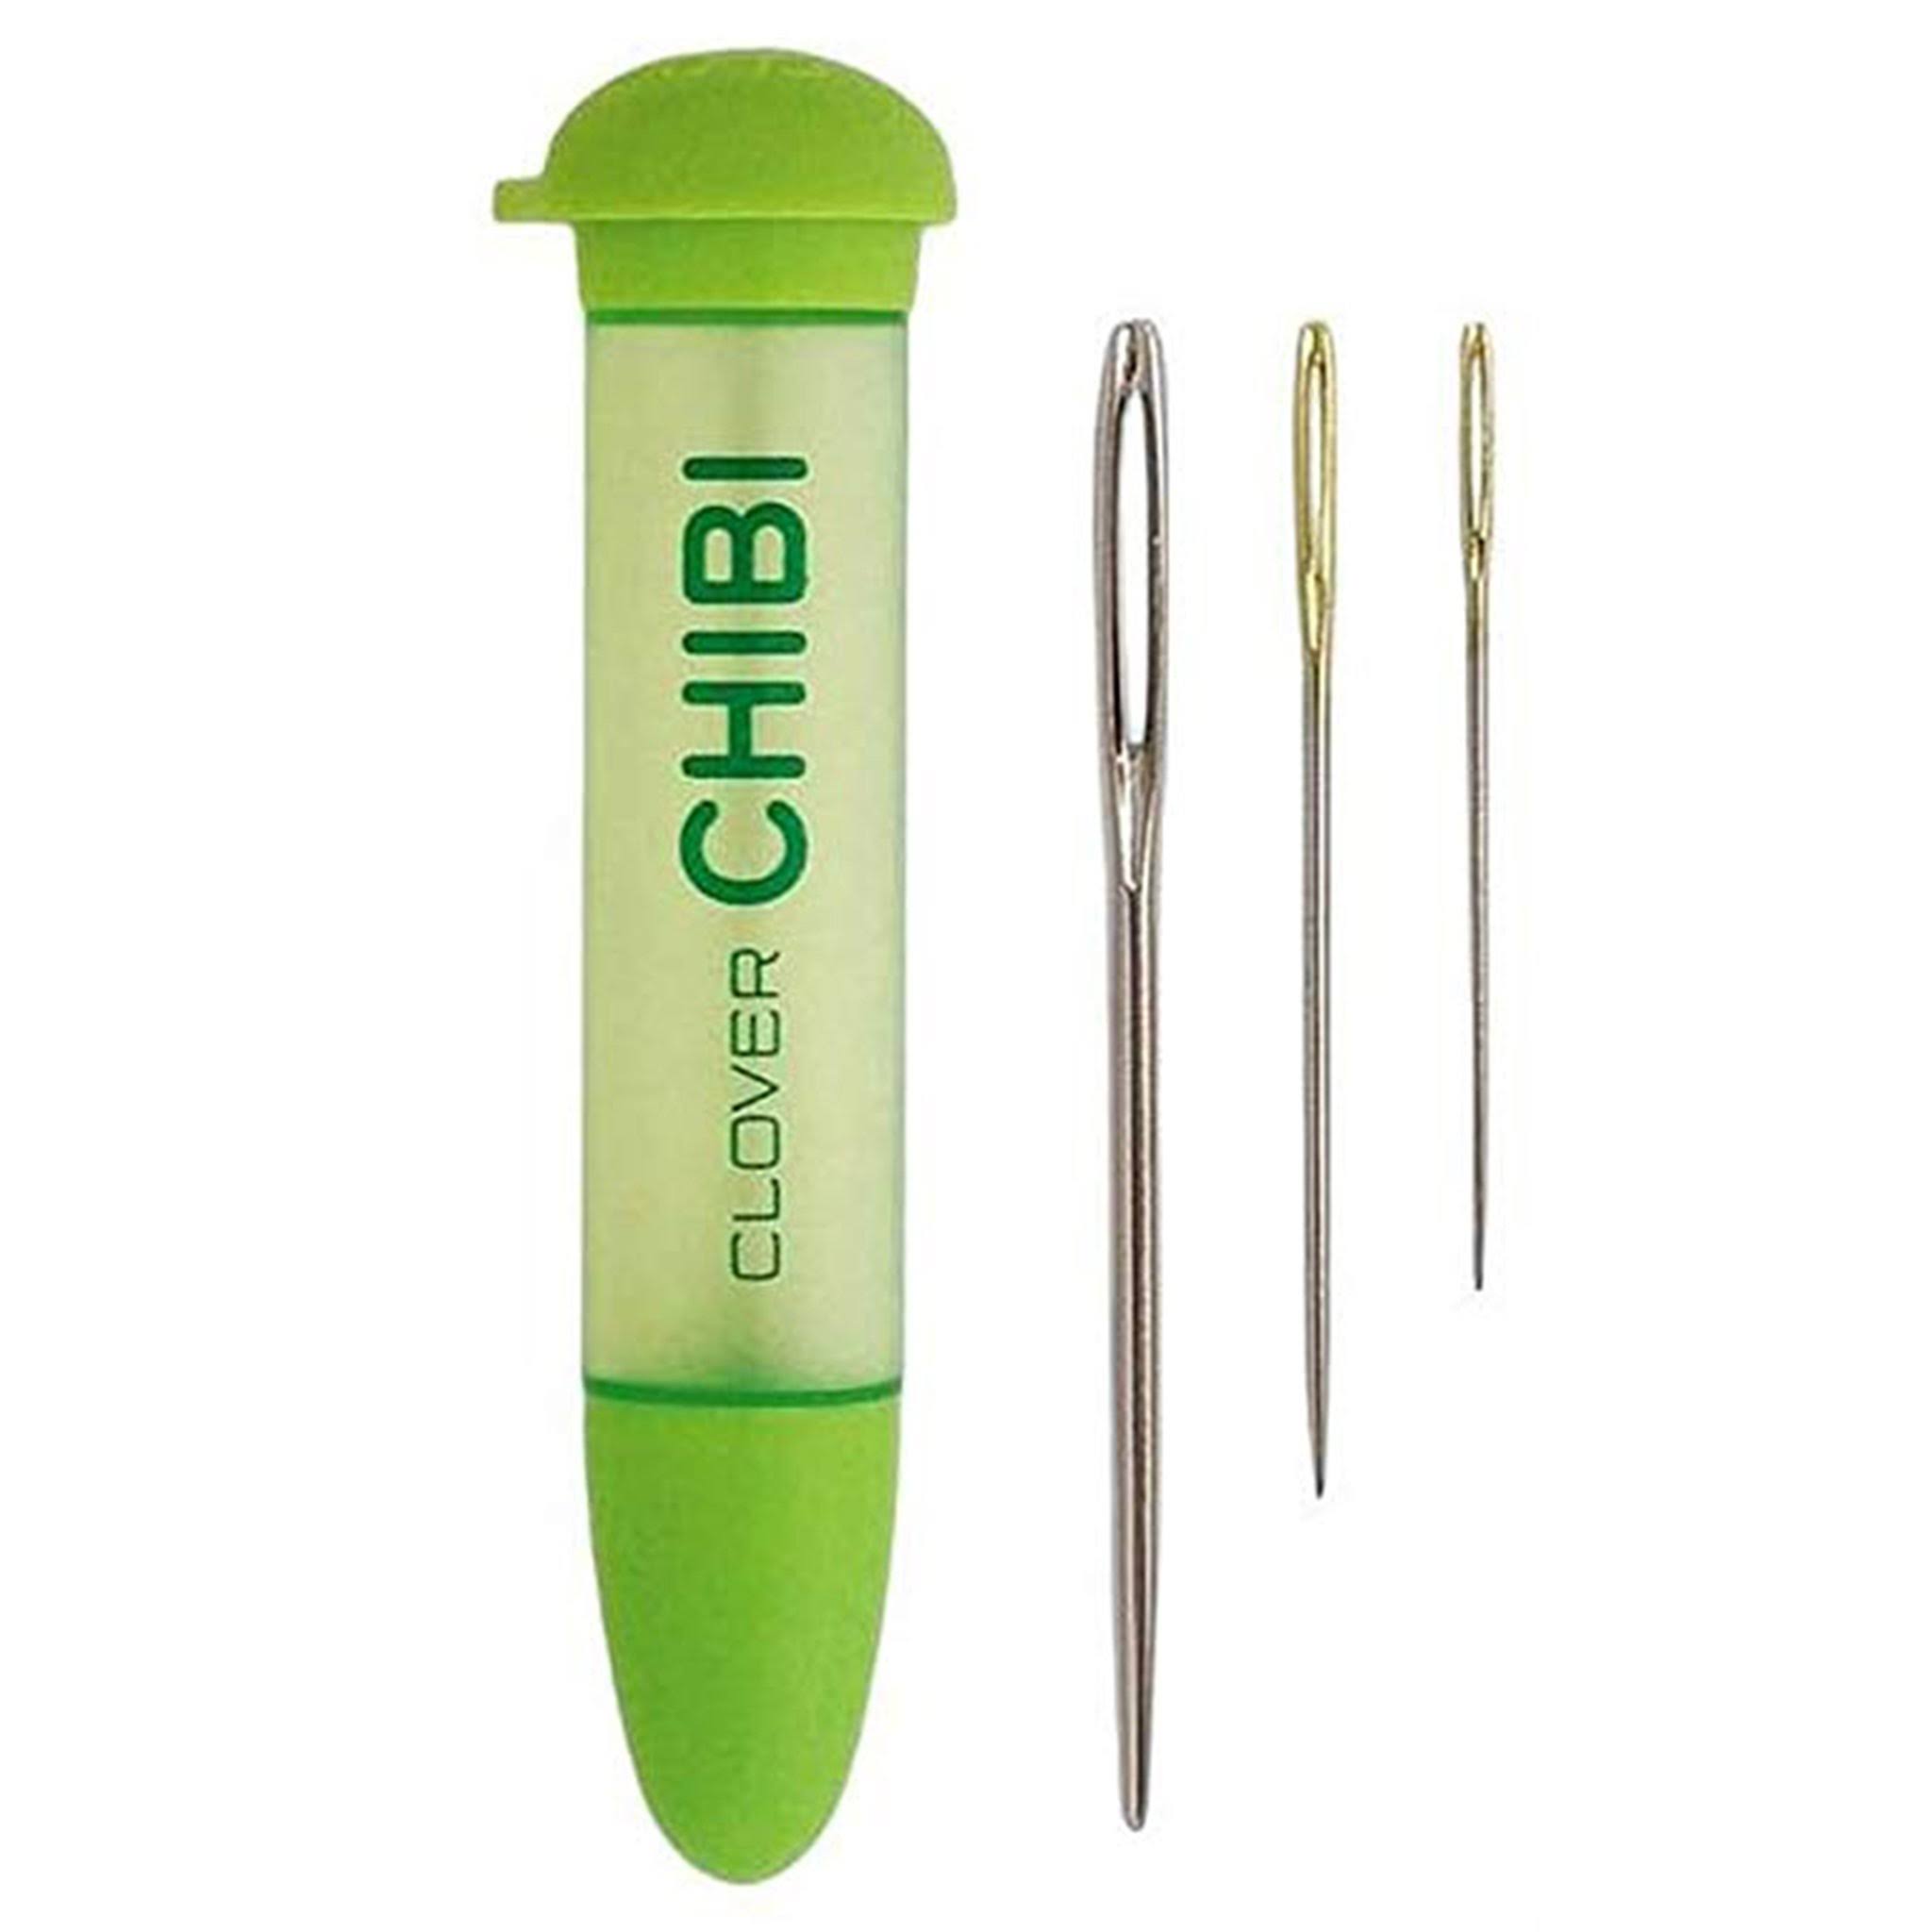 Clover Chibi Darning Needle Set - 3pc